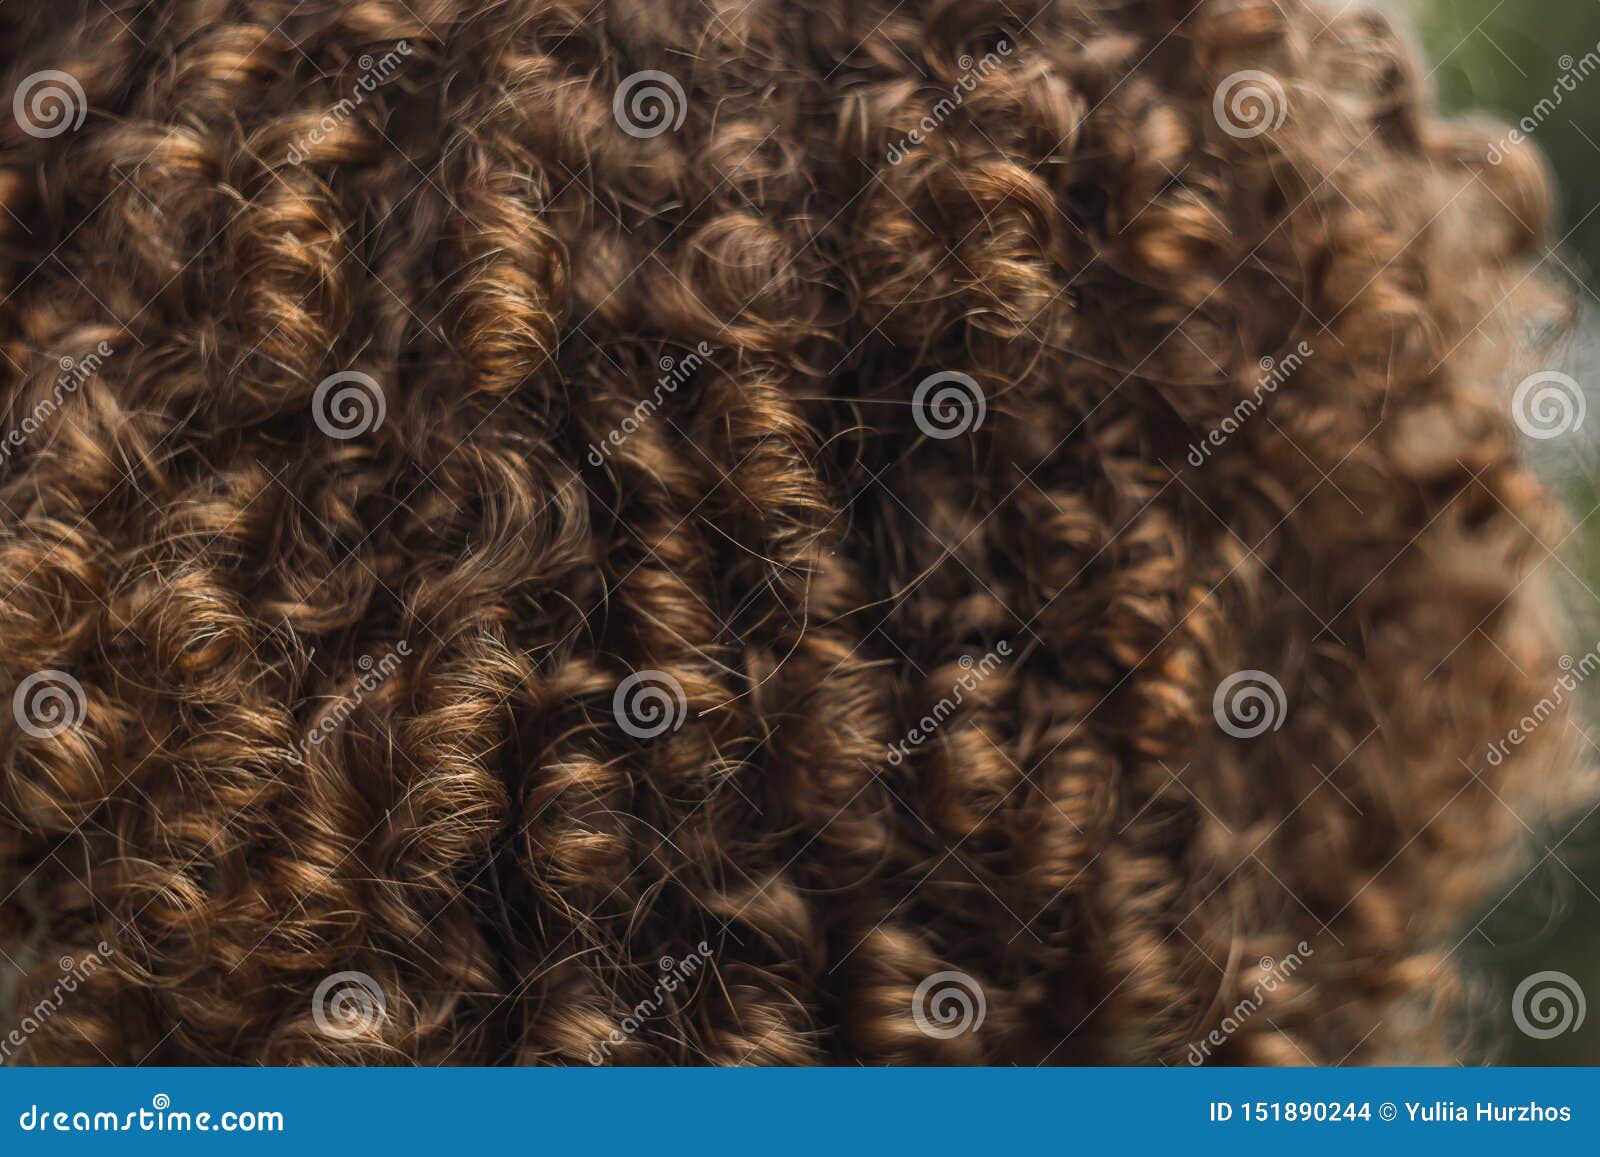 Beschaffenheit Des Mannlichen Abschlusses Des Gelockten Haares Oben Dauerwelle Fur Manner Stilvolle Frisur Stockfoto Bild Von Beschaffenheit Fur